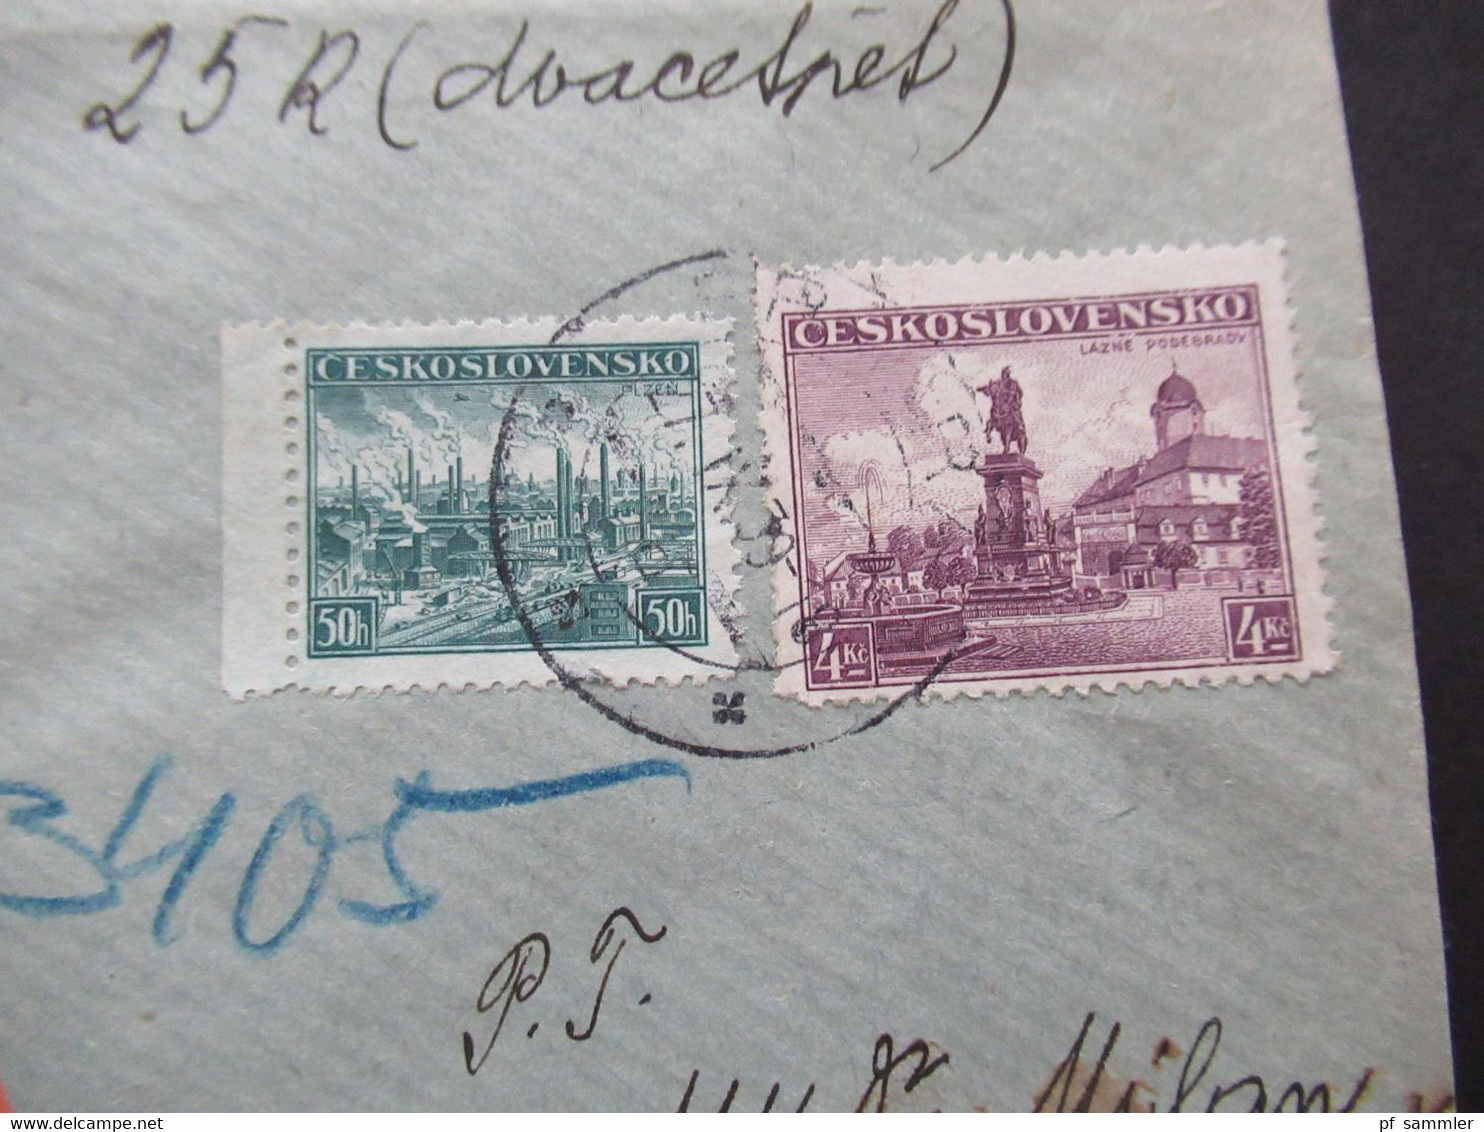 CSSR 27.9.1939 Protektorat Mitläufer Böhmen Und Mähren Einschreiben Dobirka Remboursement Pribram - Prag - Covers & Documents